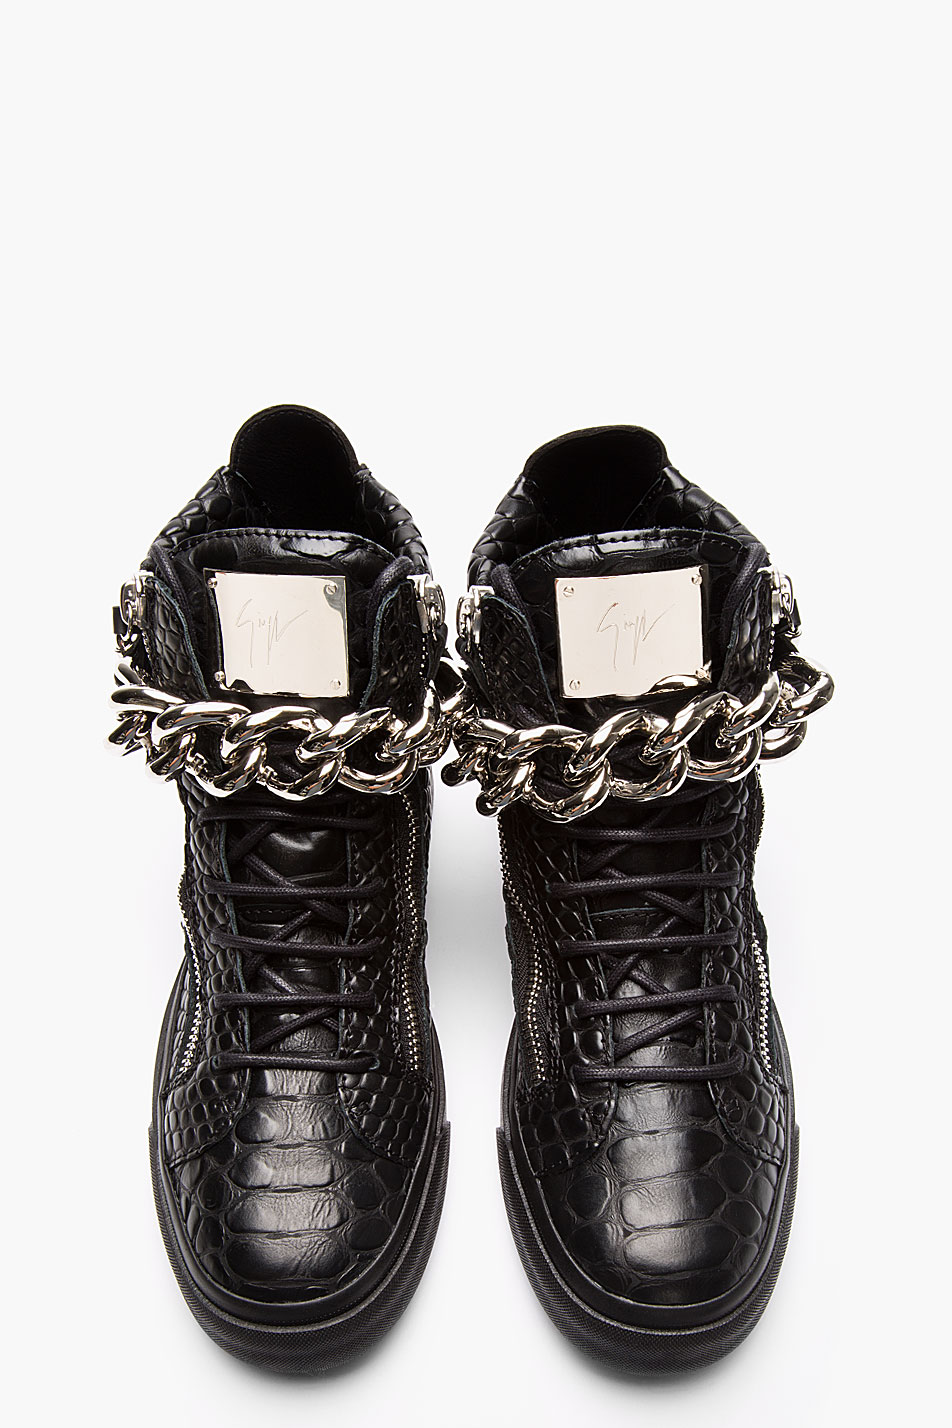 Giuseppe Zanotti Leather Croc-embossed Chain-strap Sneakers - Size 40 — Olori